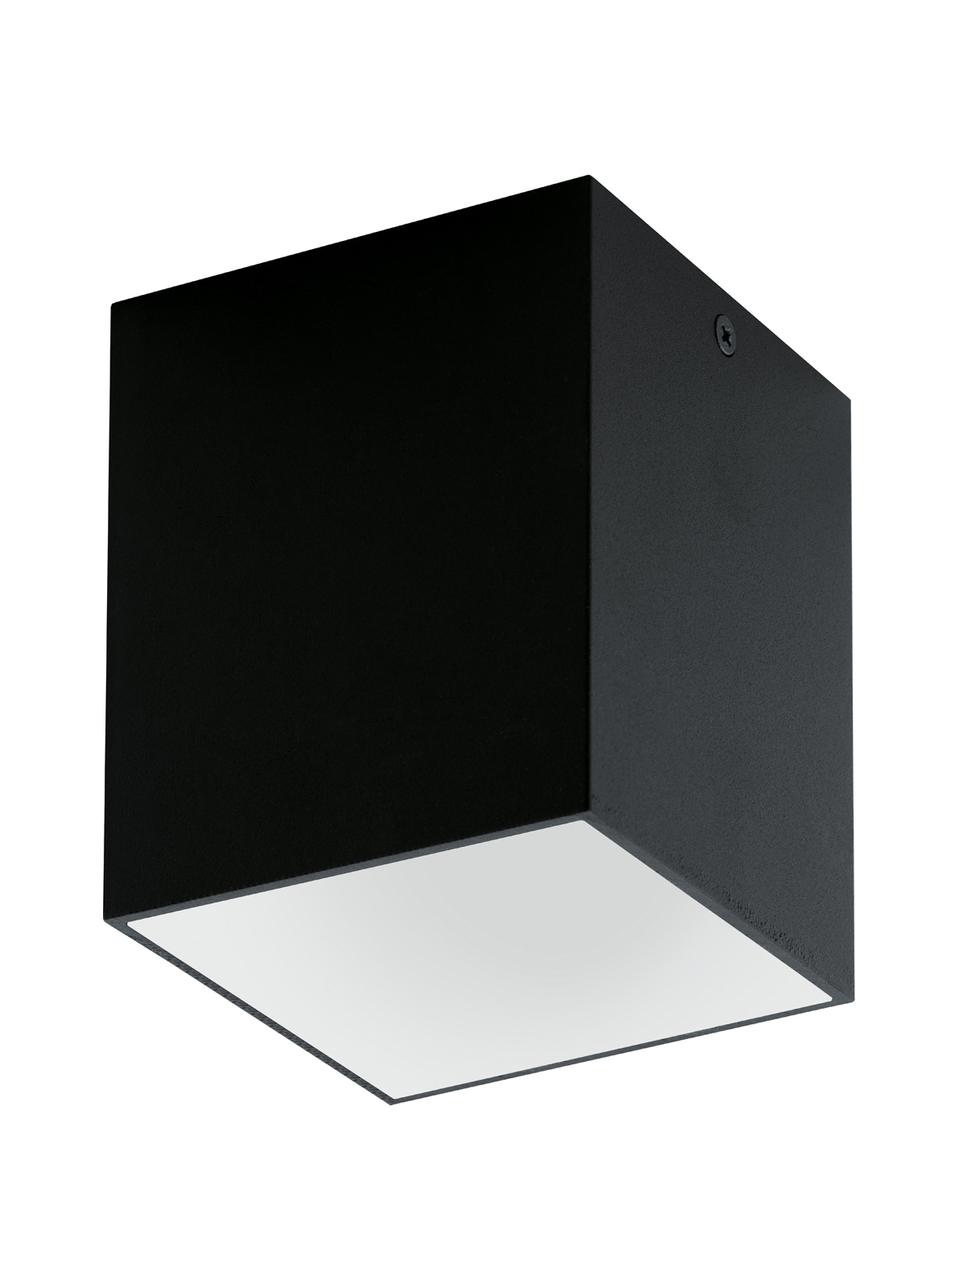 Foco LED Marty, Pantalla: metal con pintura en polv, Negro, blanco, An 10 x Al 12 cm